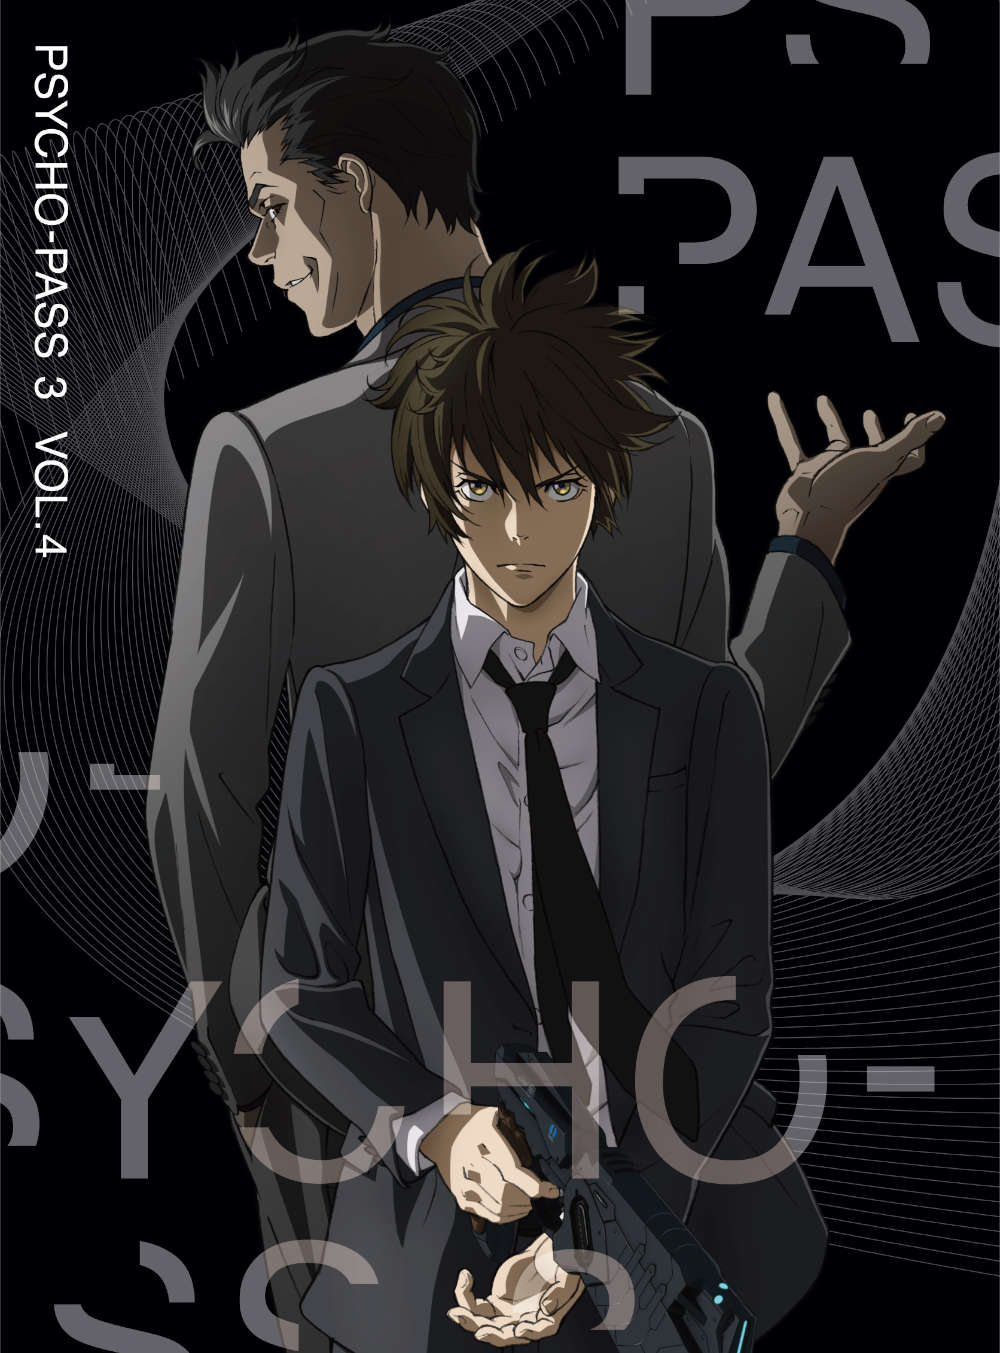 PSYCHO-PASS サイコパス 3 Vol.4 Blu-ray 初回生産限定版